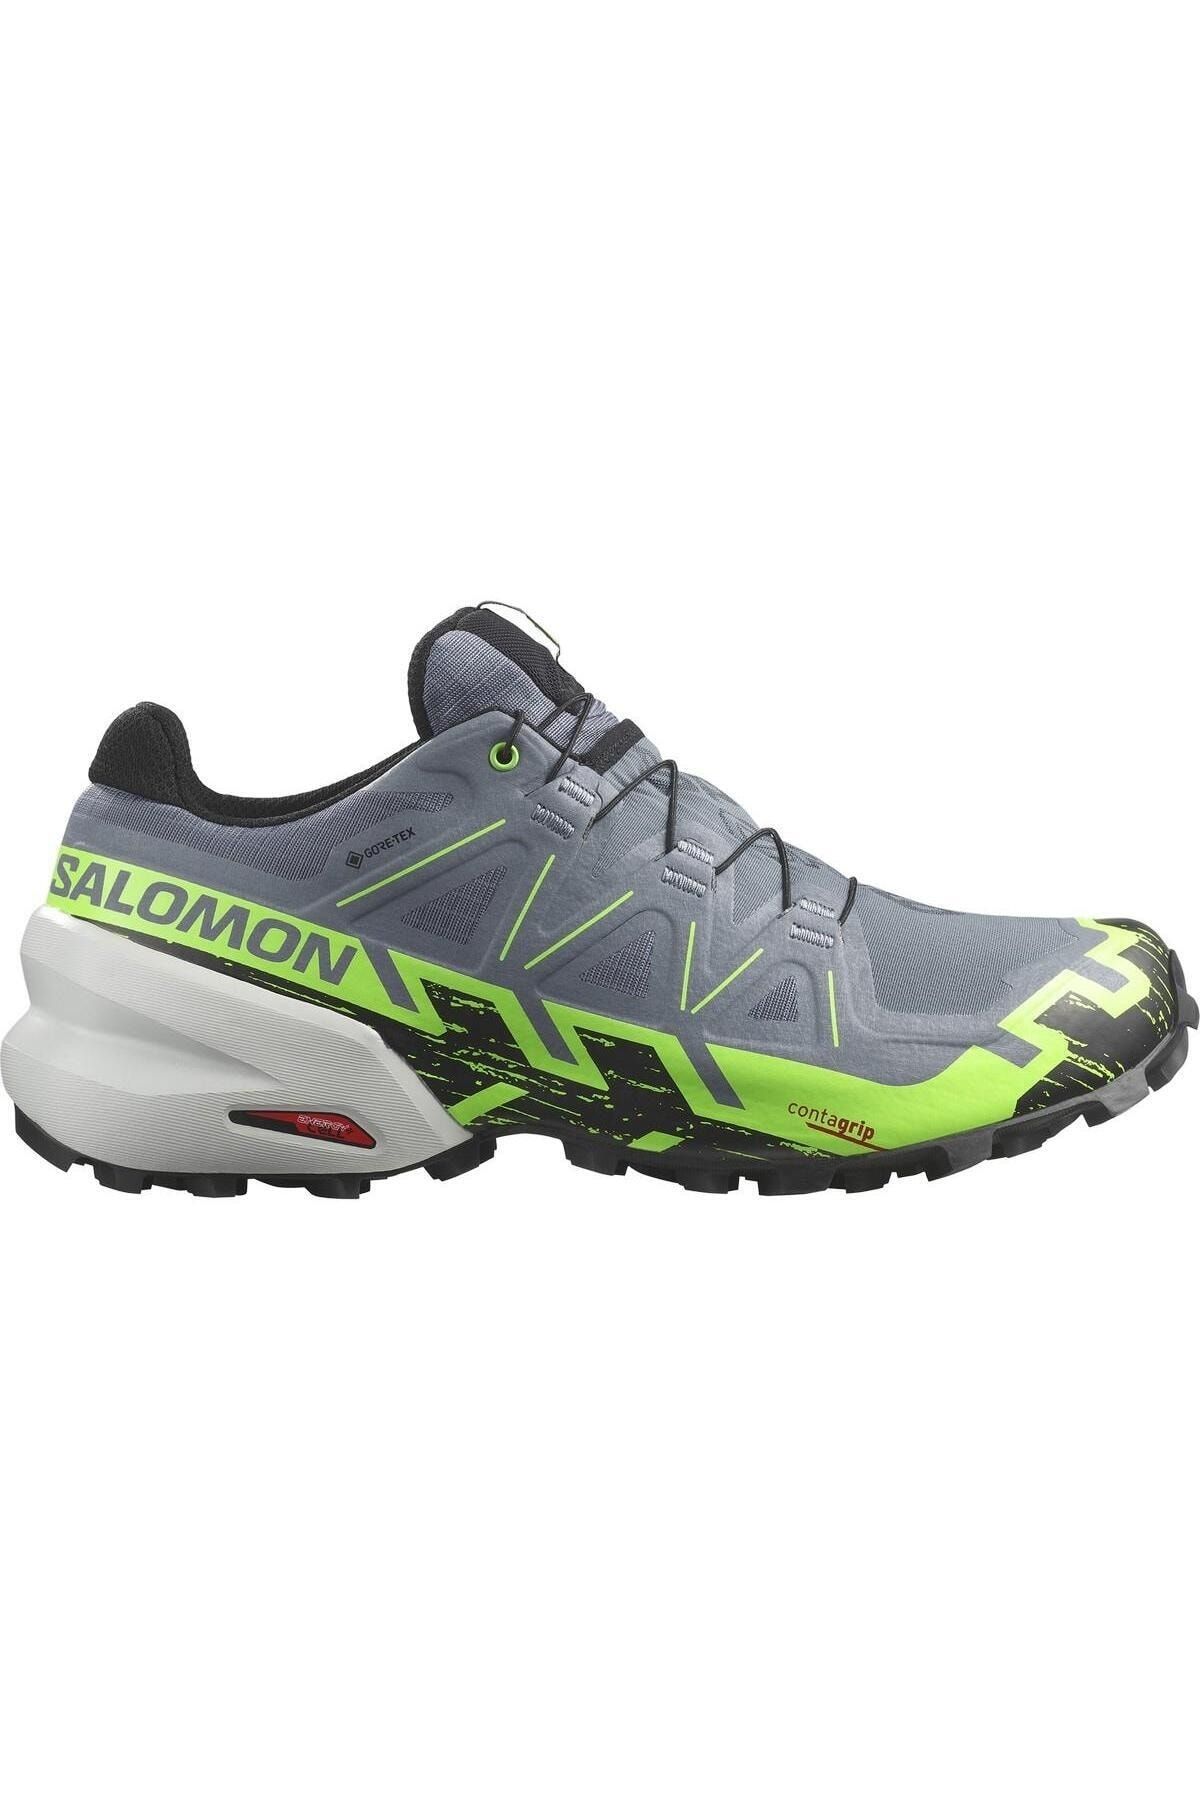 Salomon L47301900 Speedcross 6 Gtx Erkek Koşu Ayakkabısı